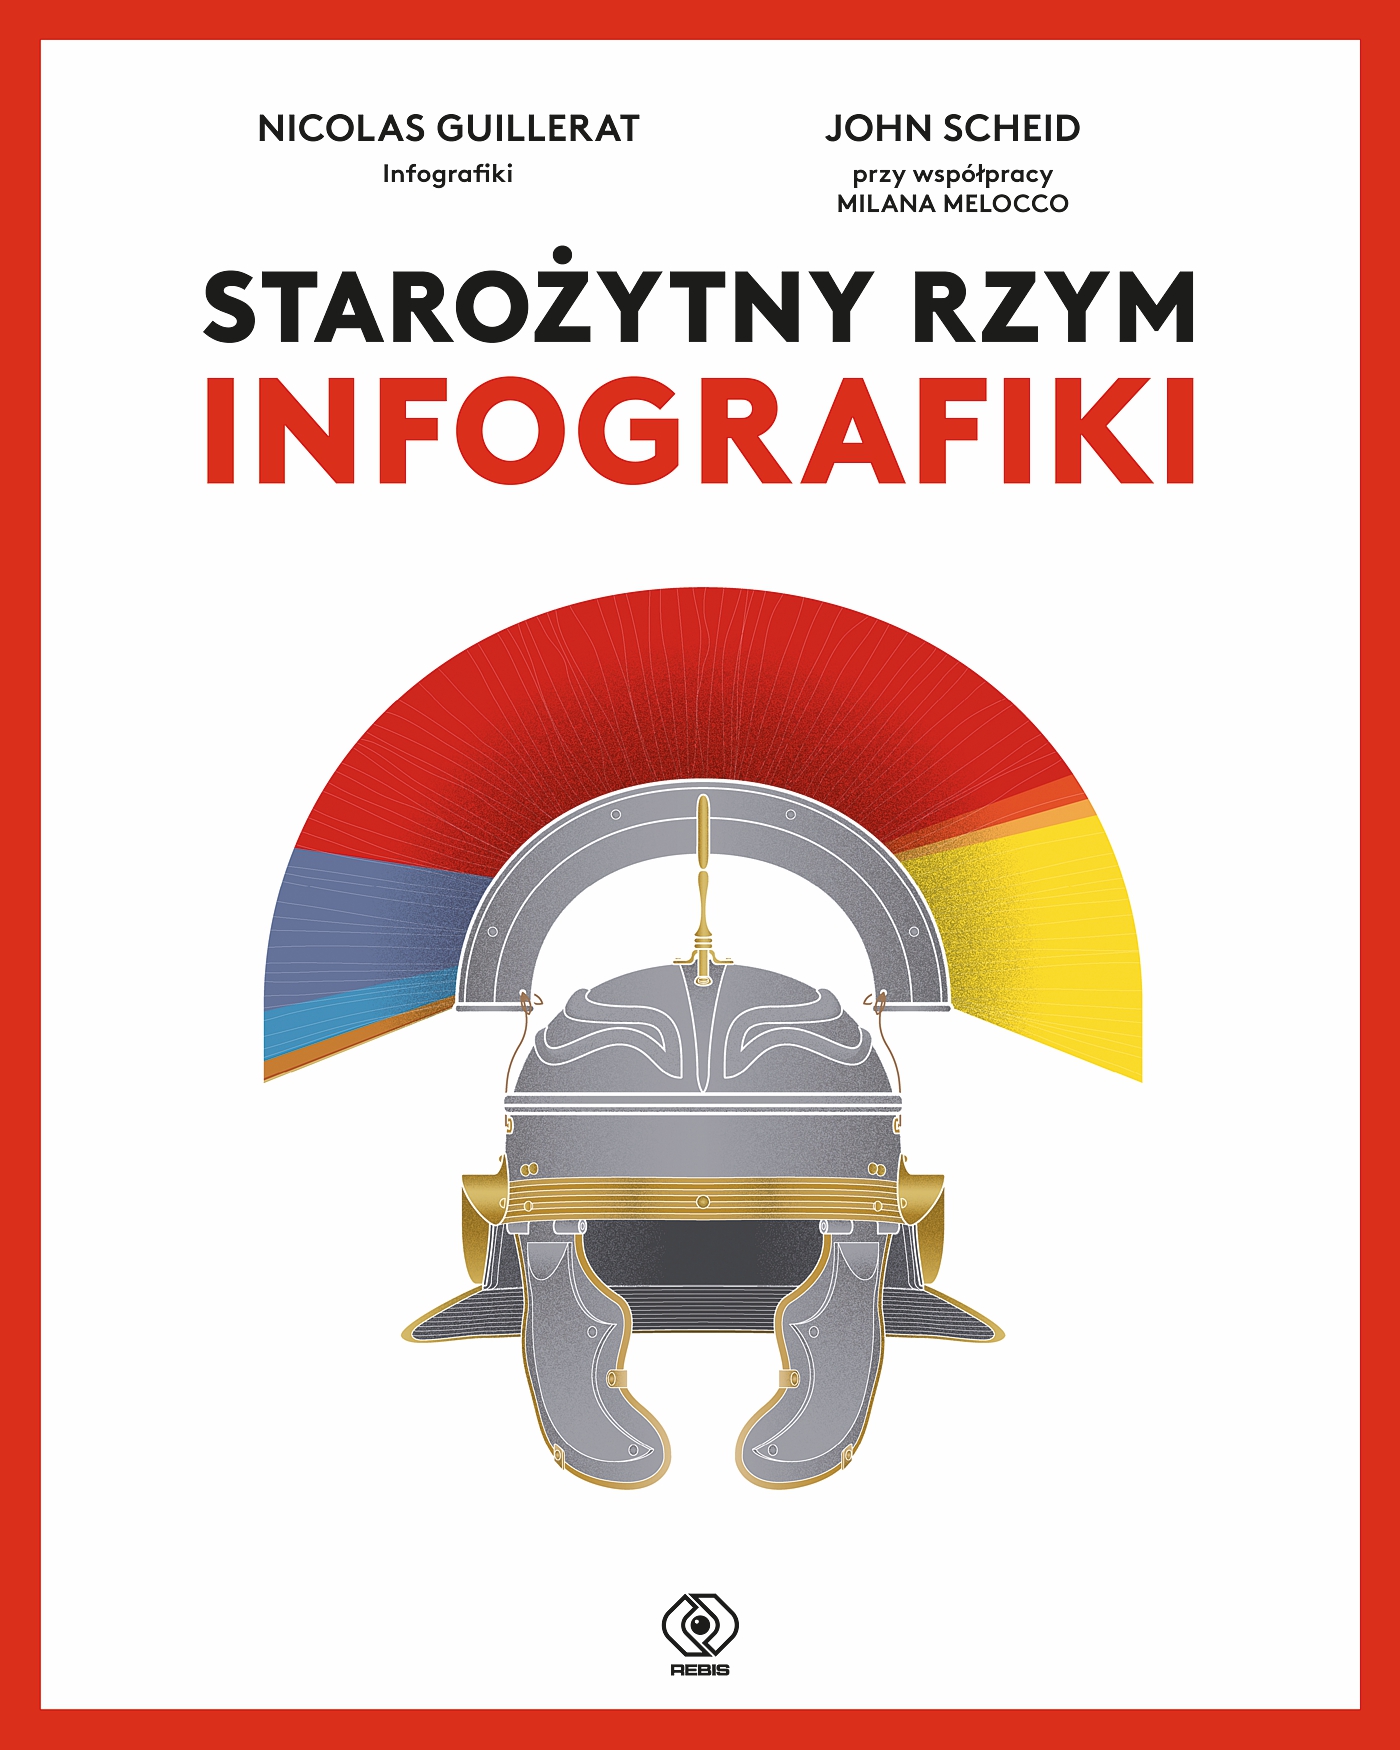 "Starożytny Rzym Infografiki", od 23 listopada w księgarniach!